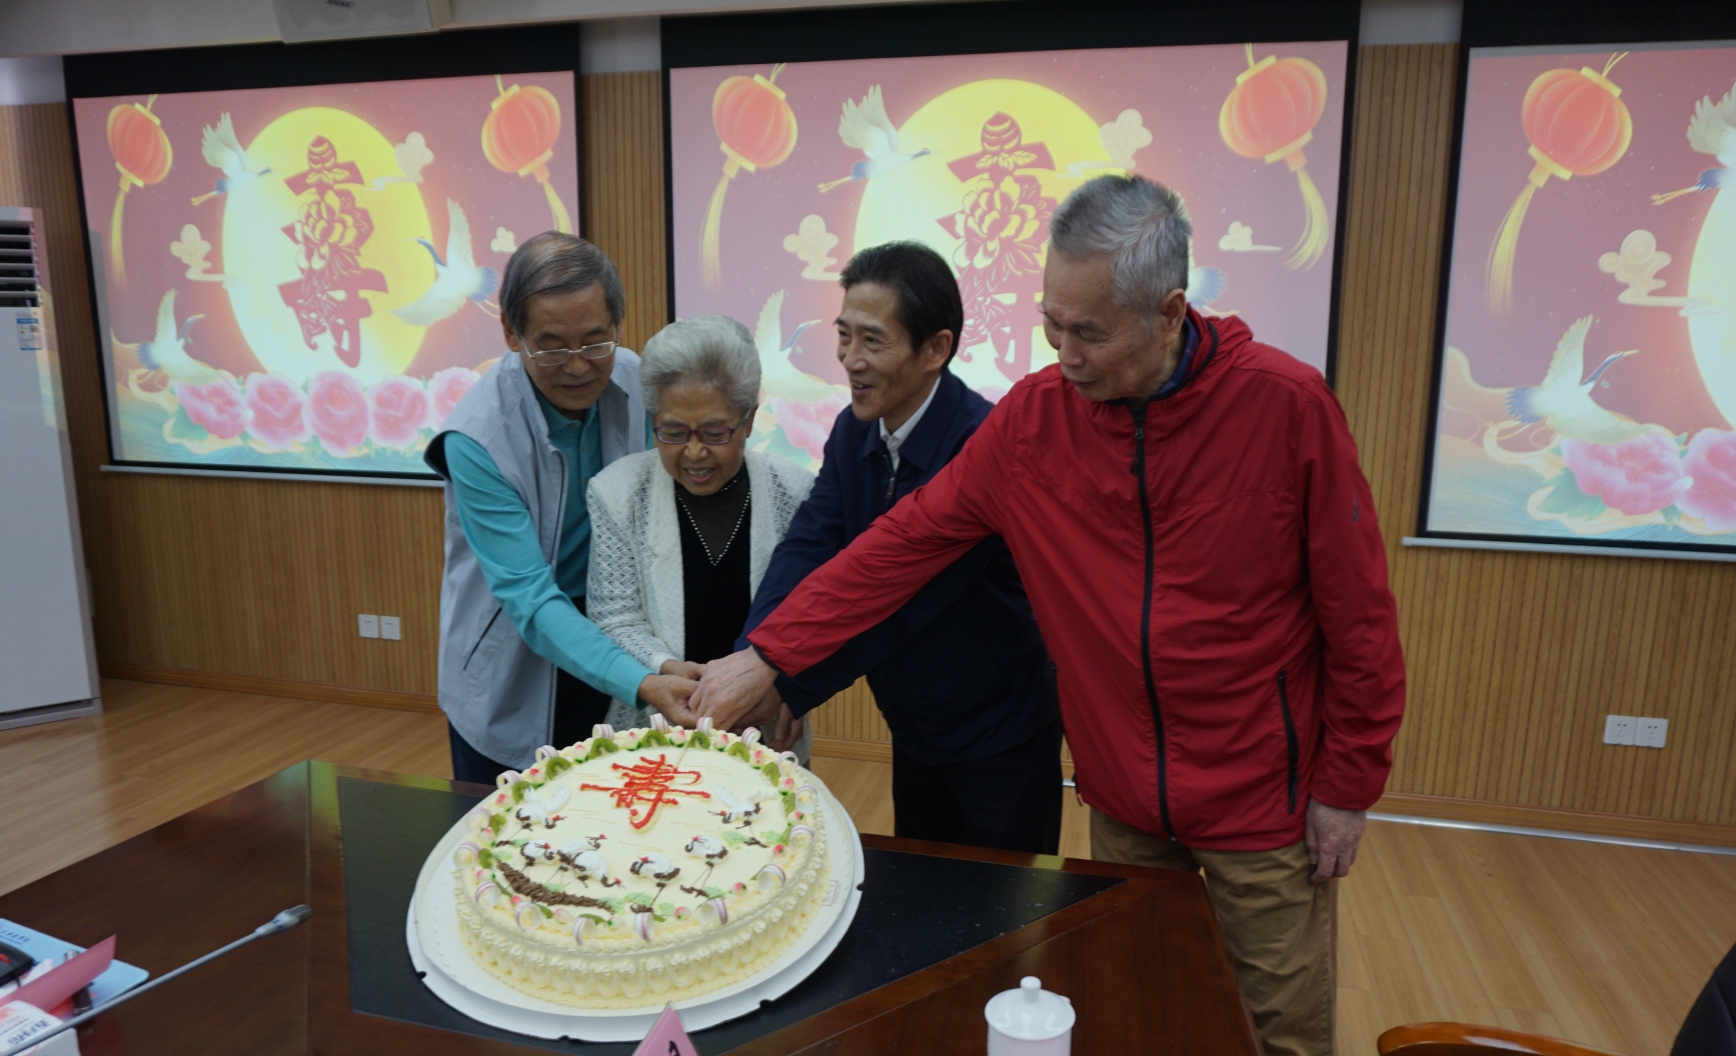 吴忠为“逢五逢十”的寿星代表切蛋糕庆祝生日